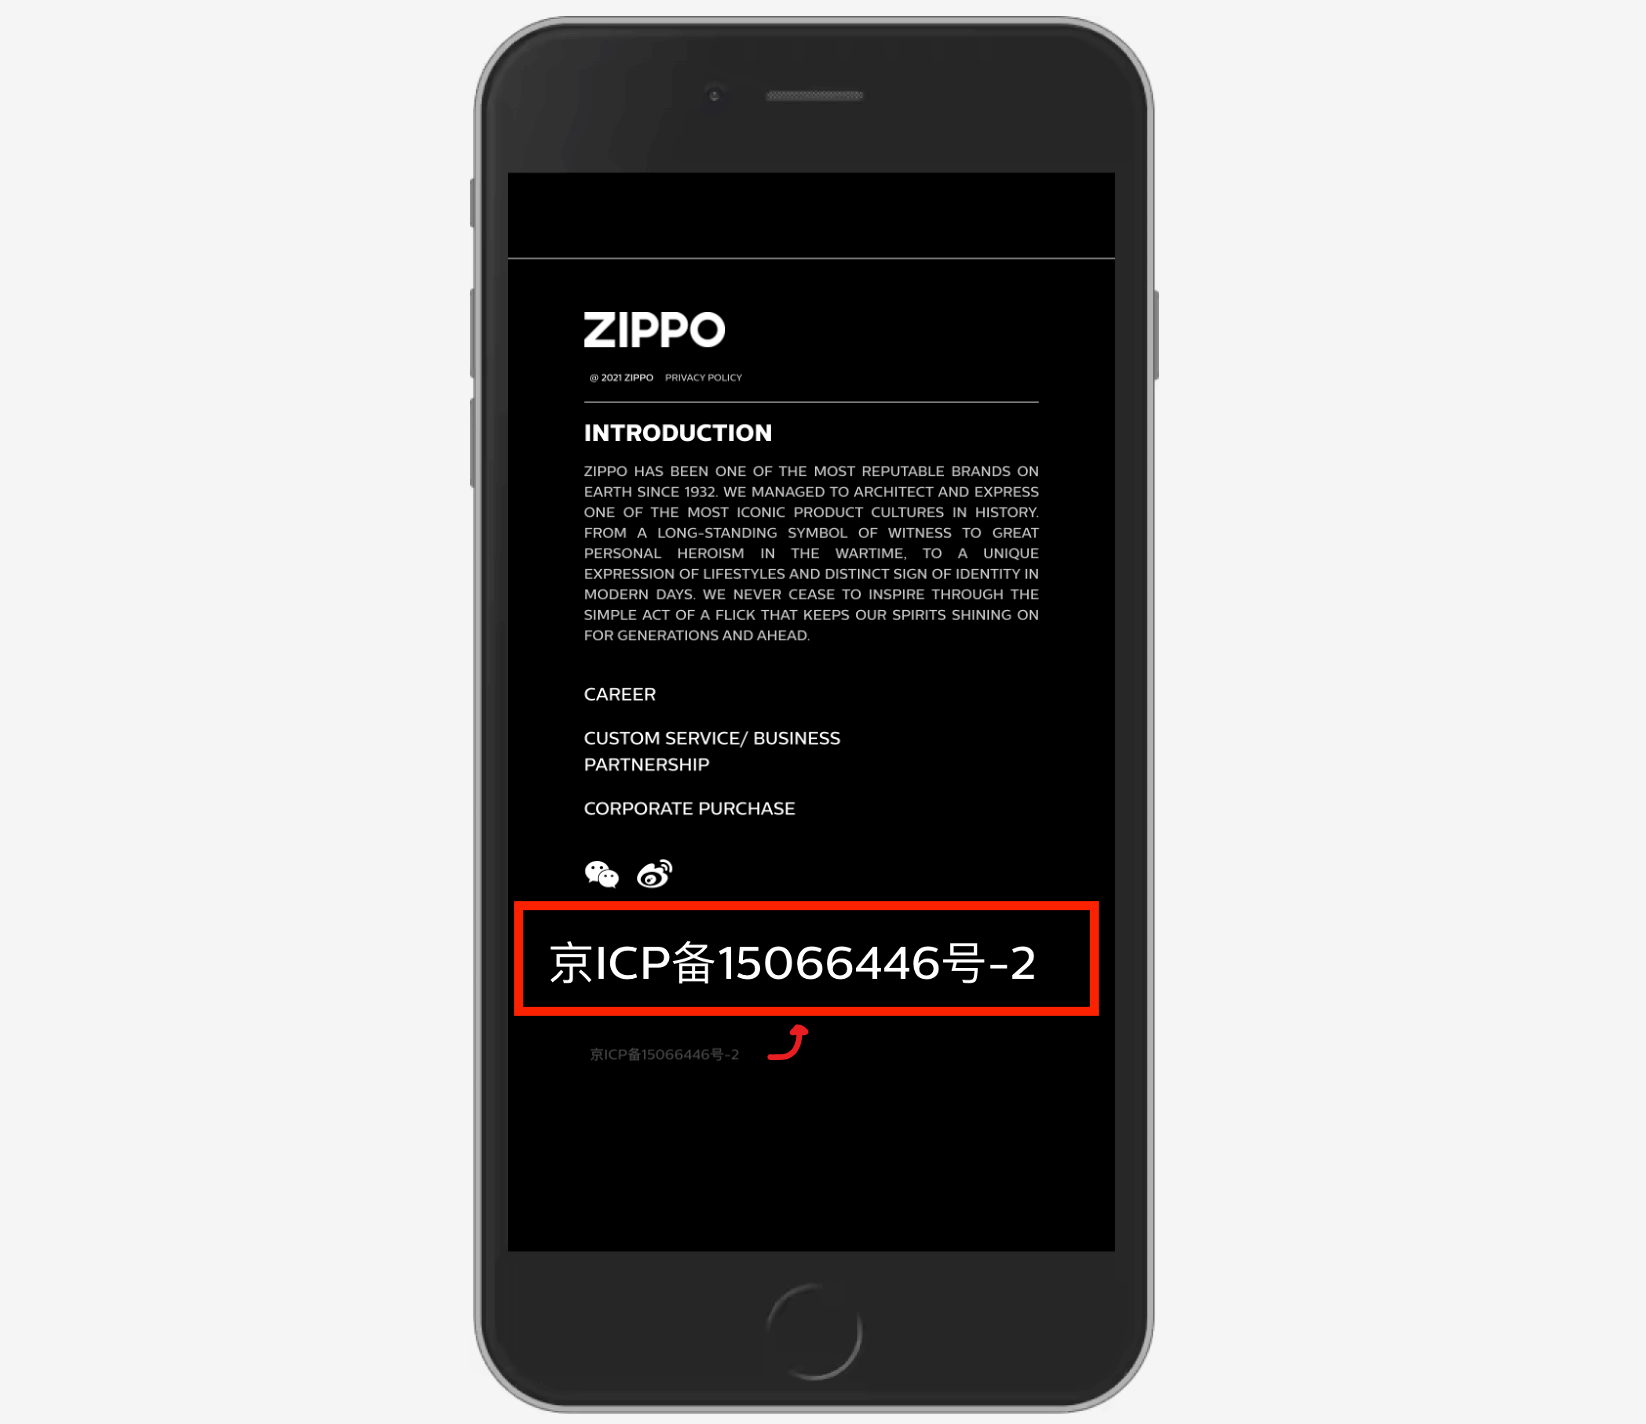 Zippo's ICP number